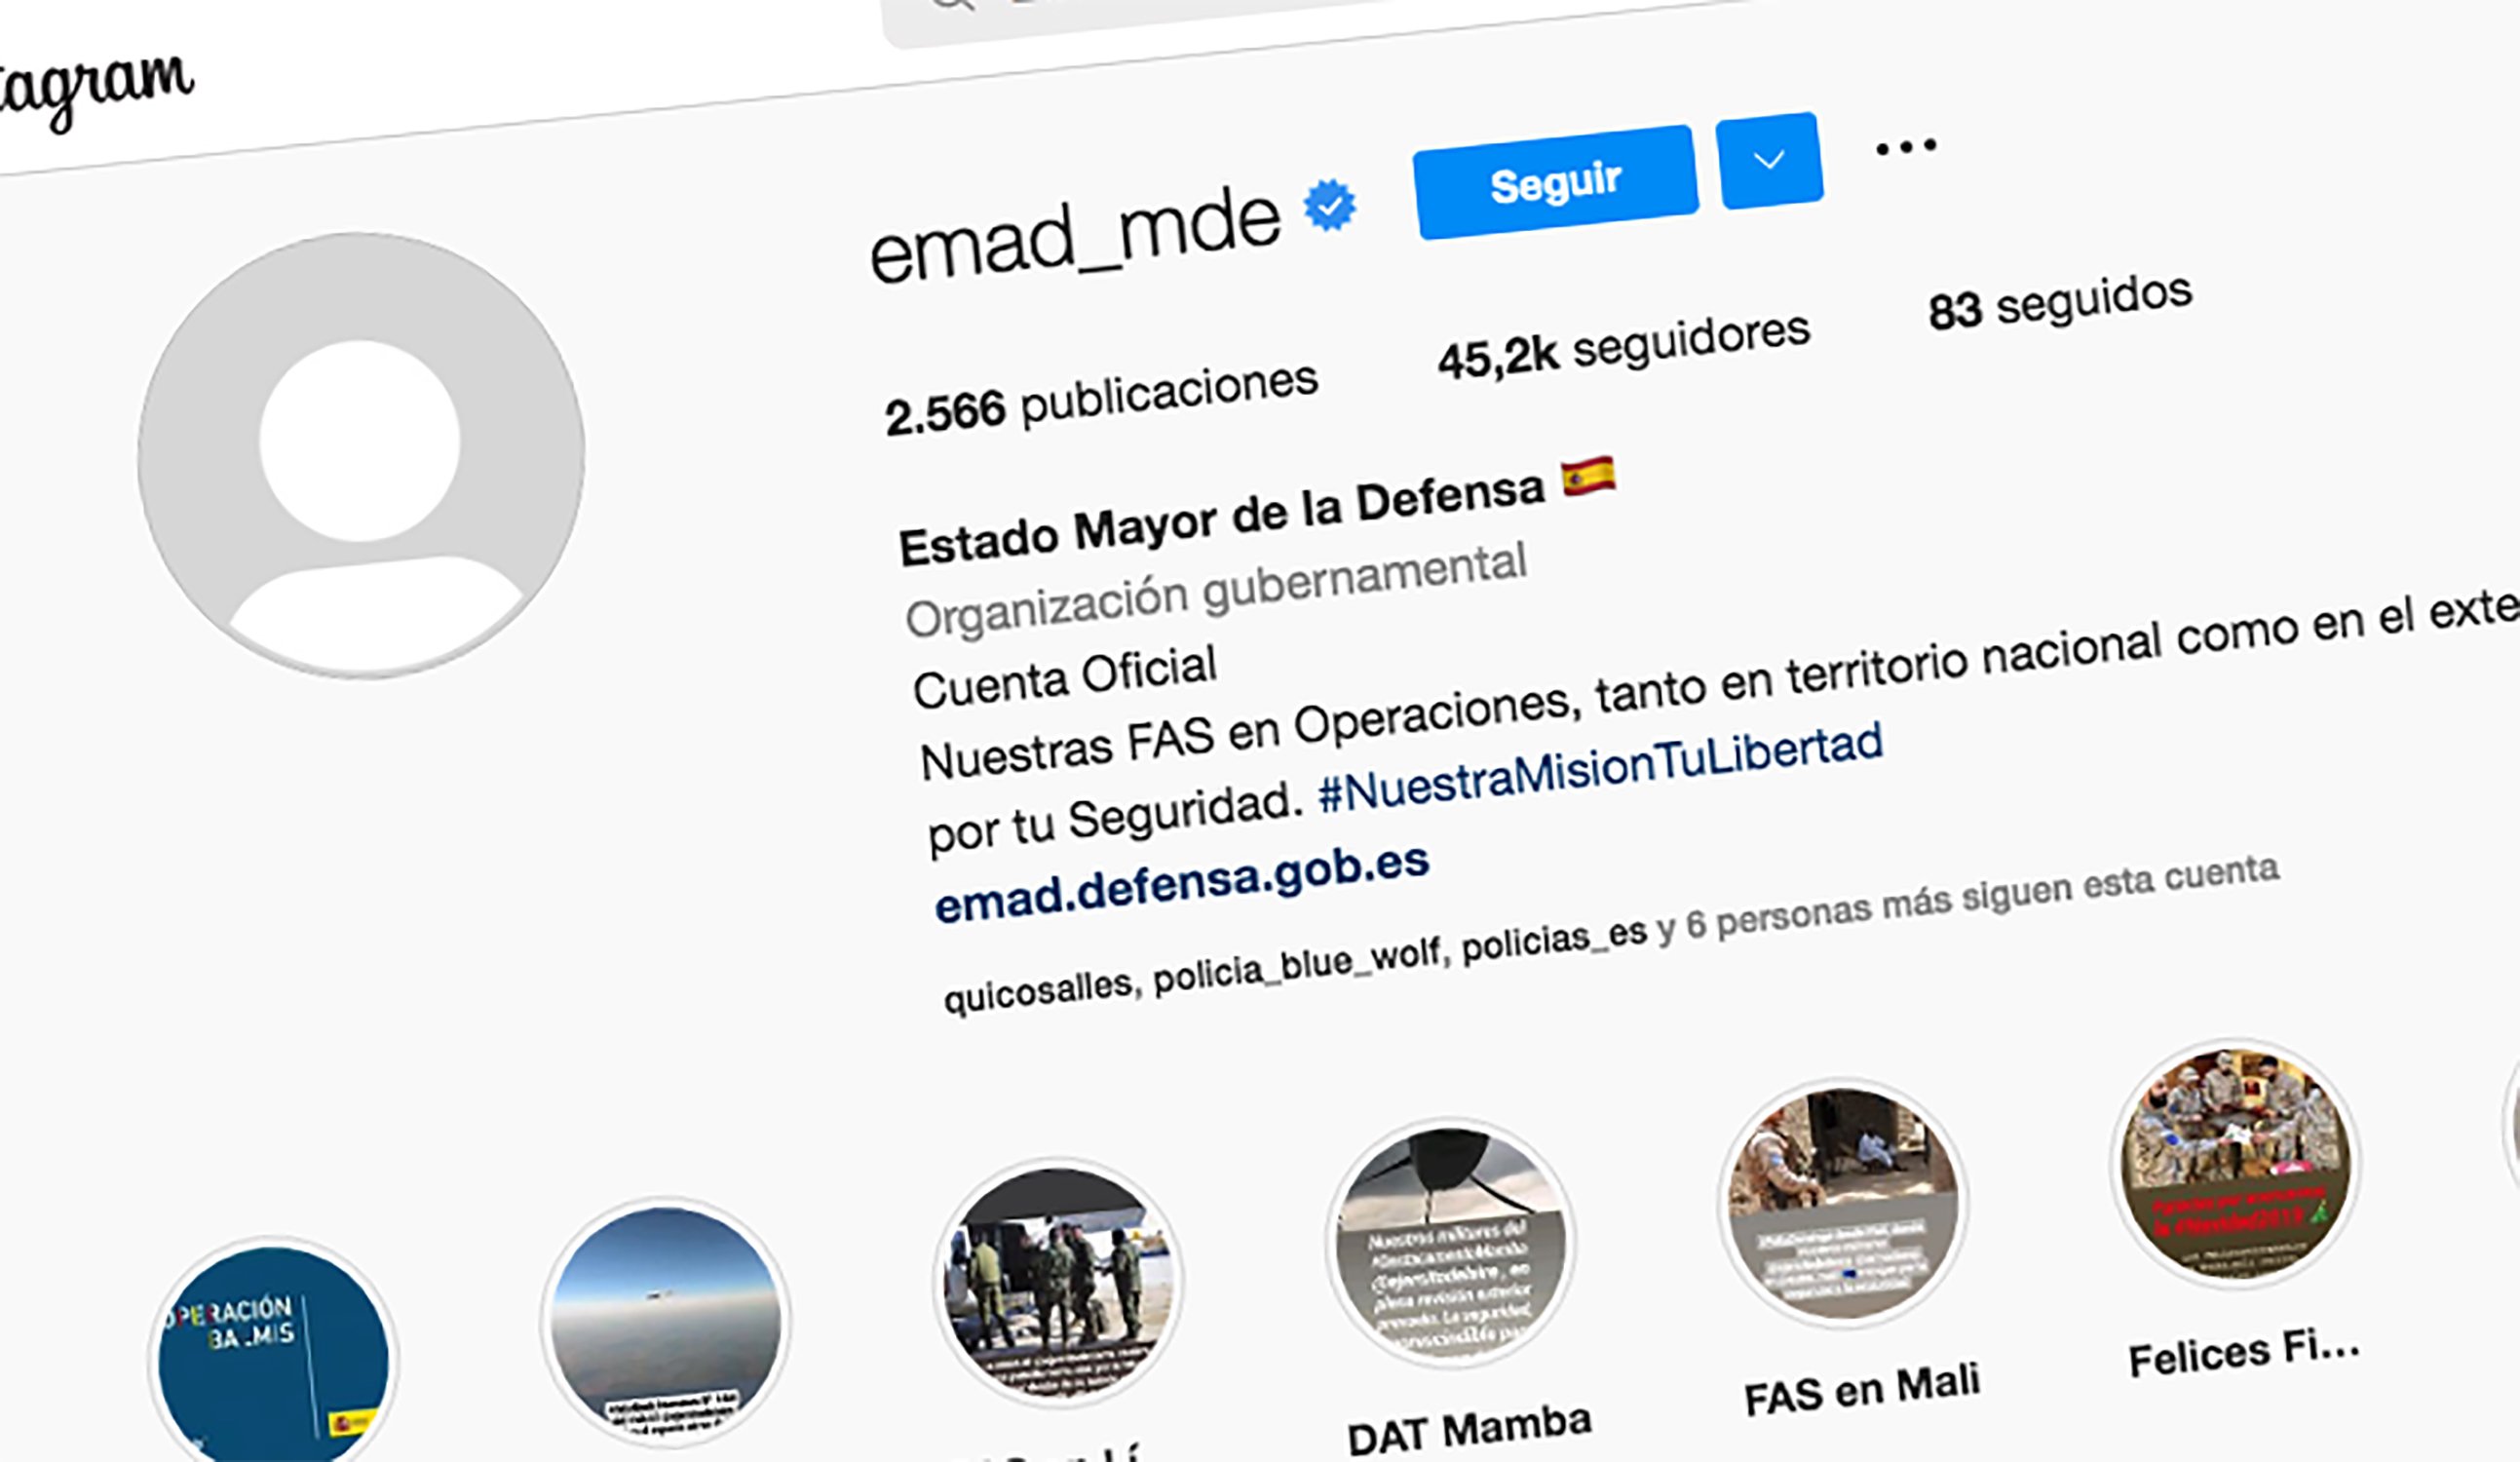 Cuelan mujeres desnudas en el perfil de Instagram del Estado Mayor del ejército español